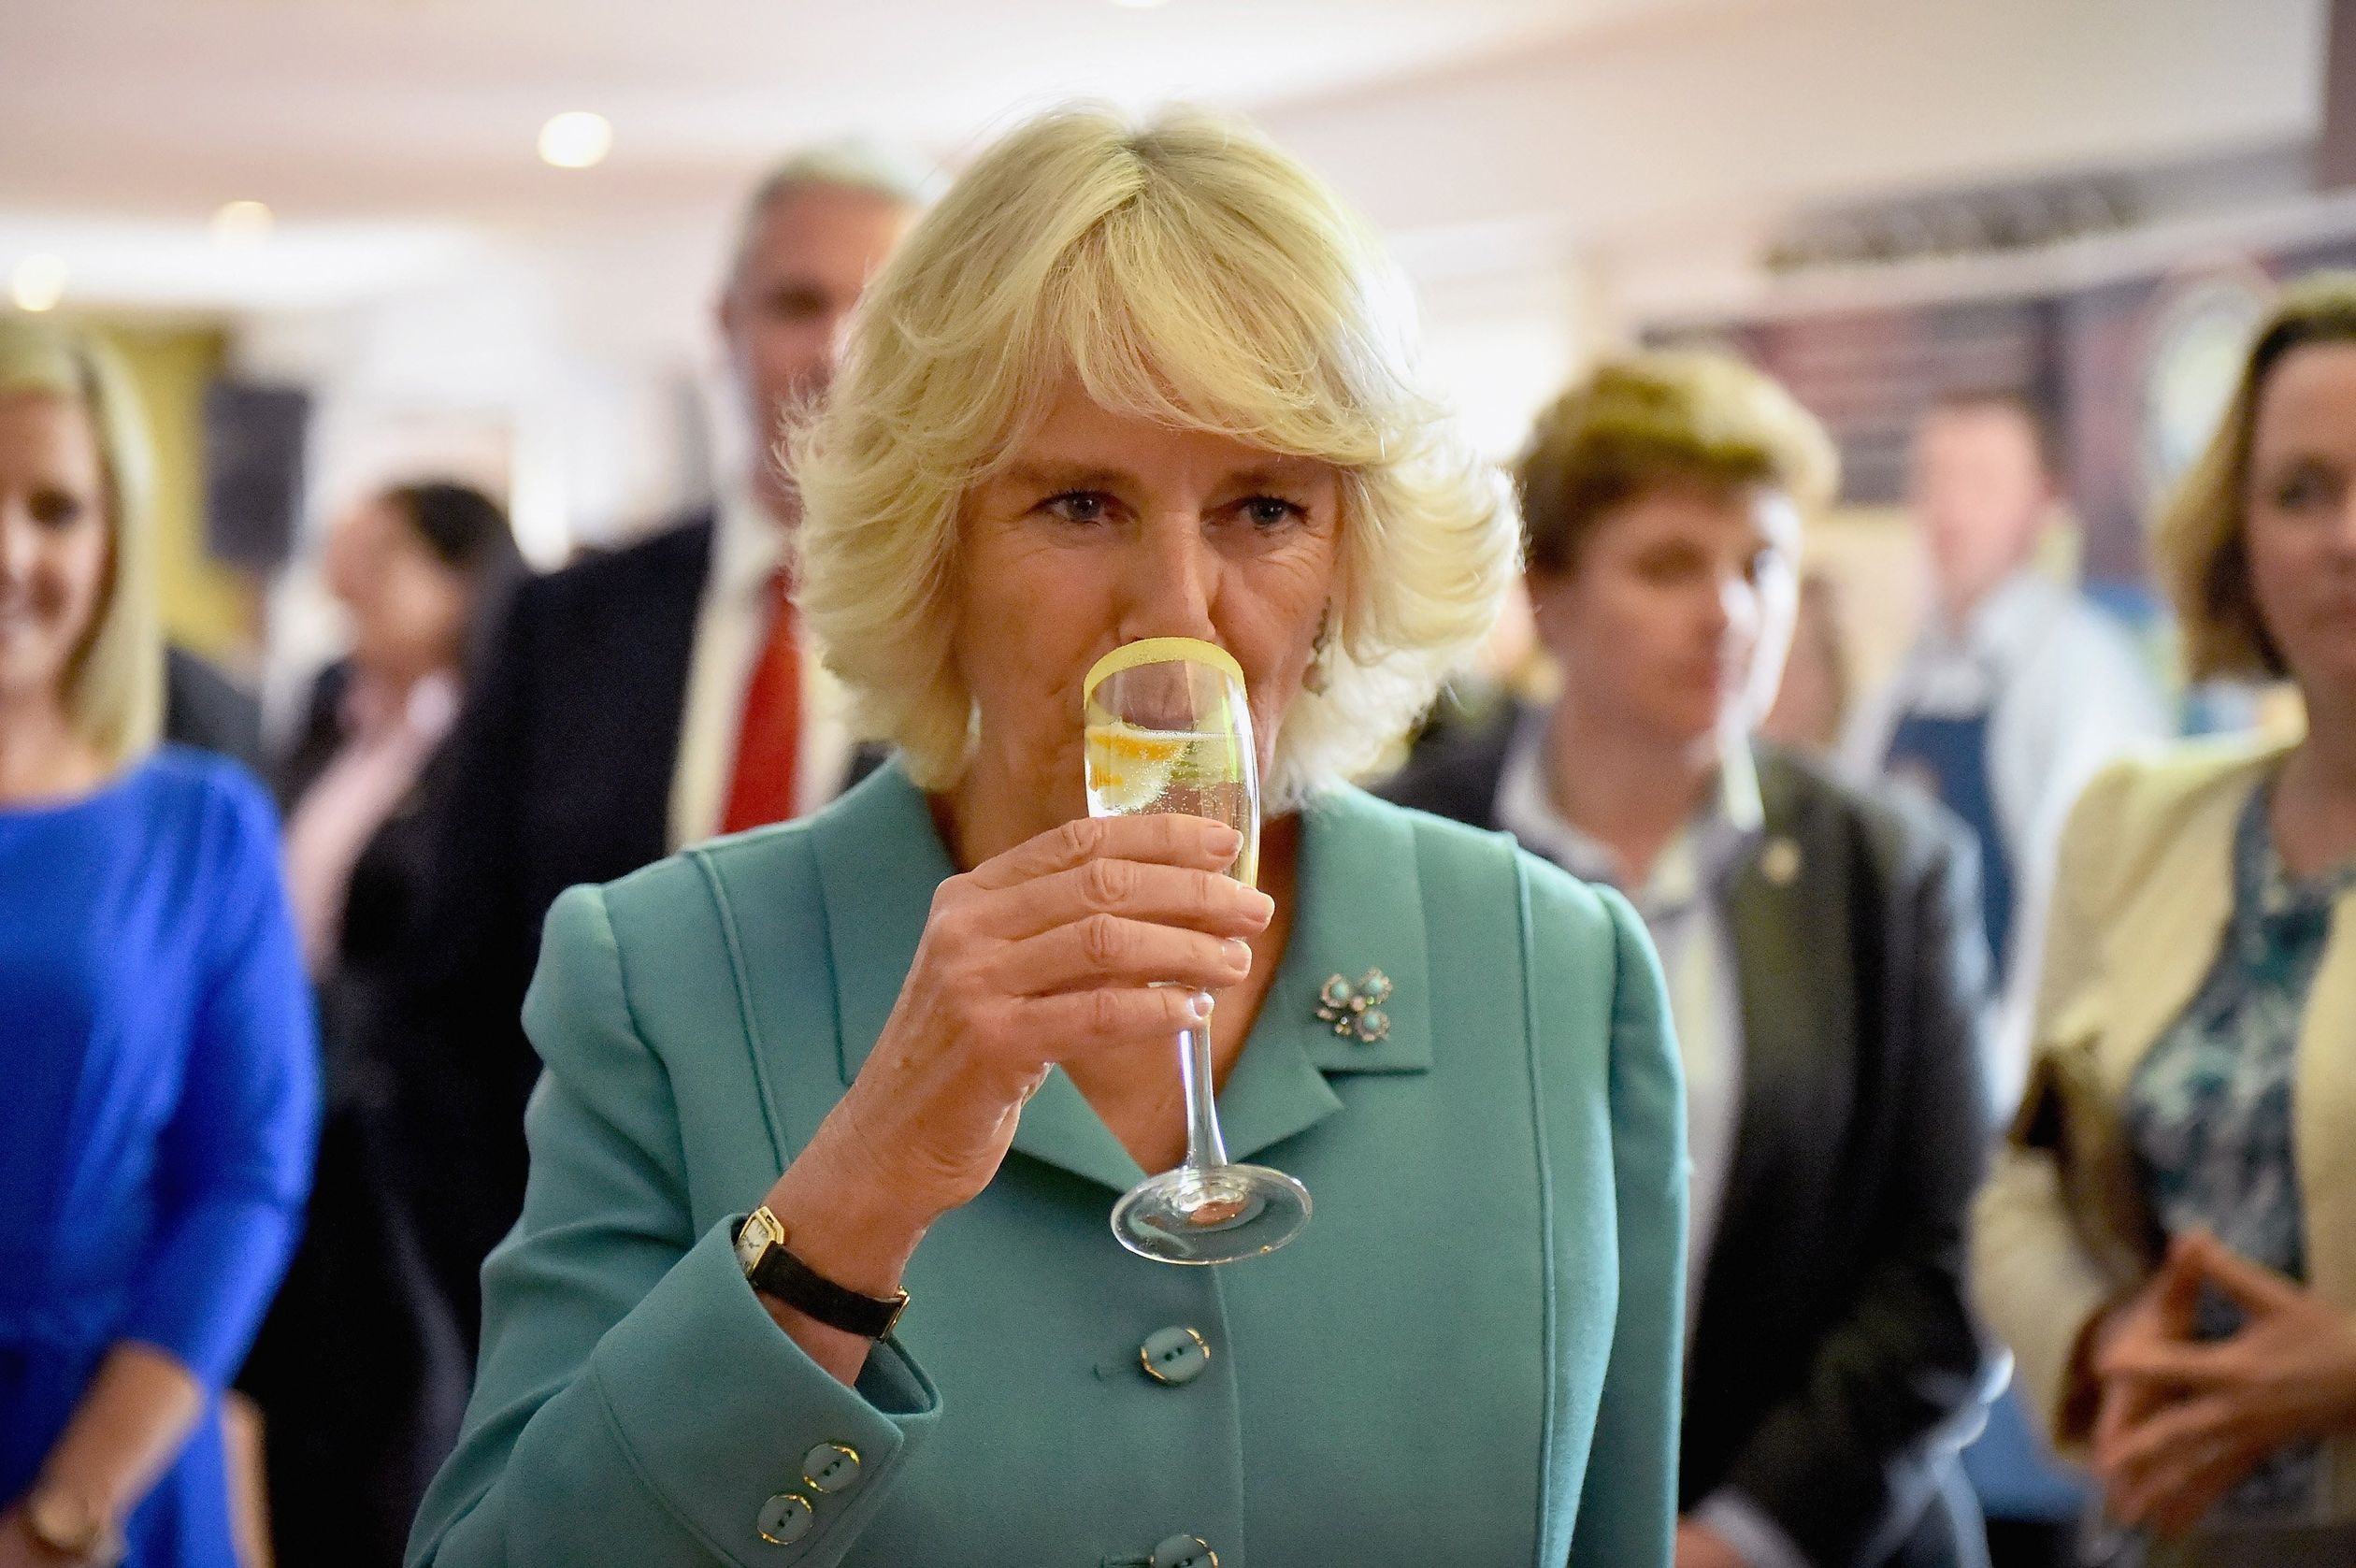 2015: hertogin Camilla proeft een cocktail, genaamd "De Hertogin". Ze is op bezoek aan de Taste of the Wild Atlantic Way Food Festival in Galway, Ierland.